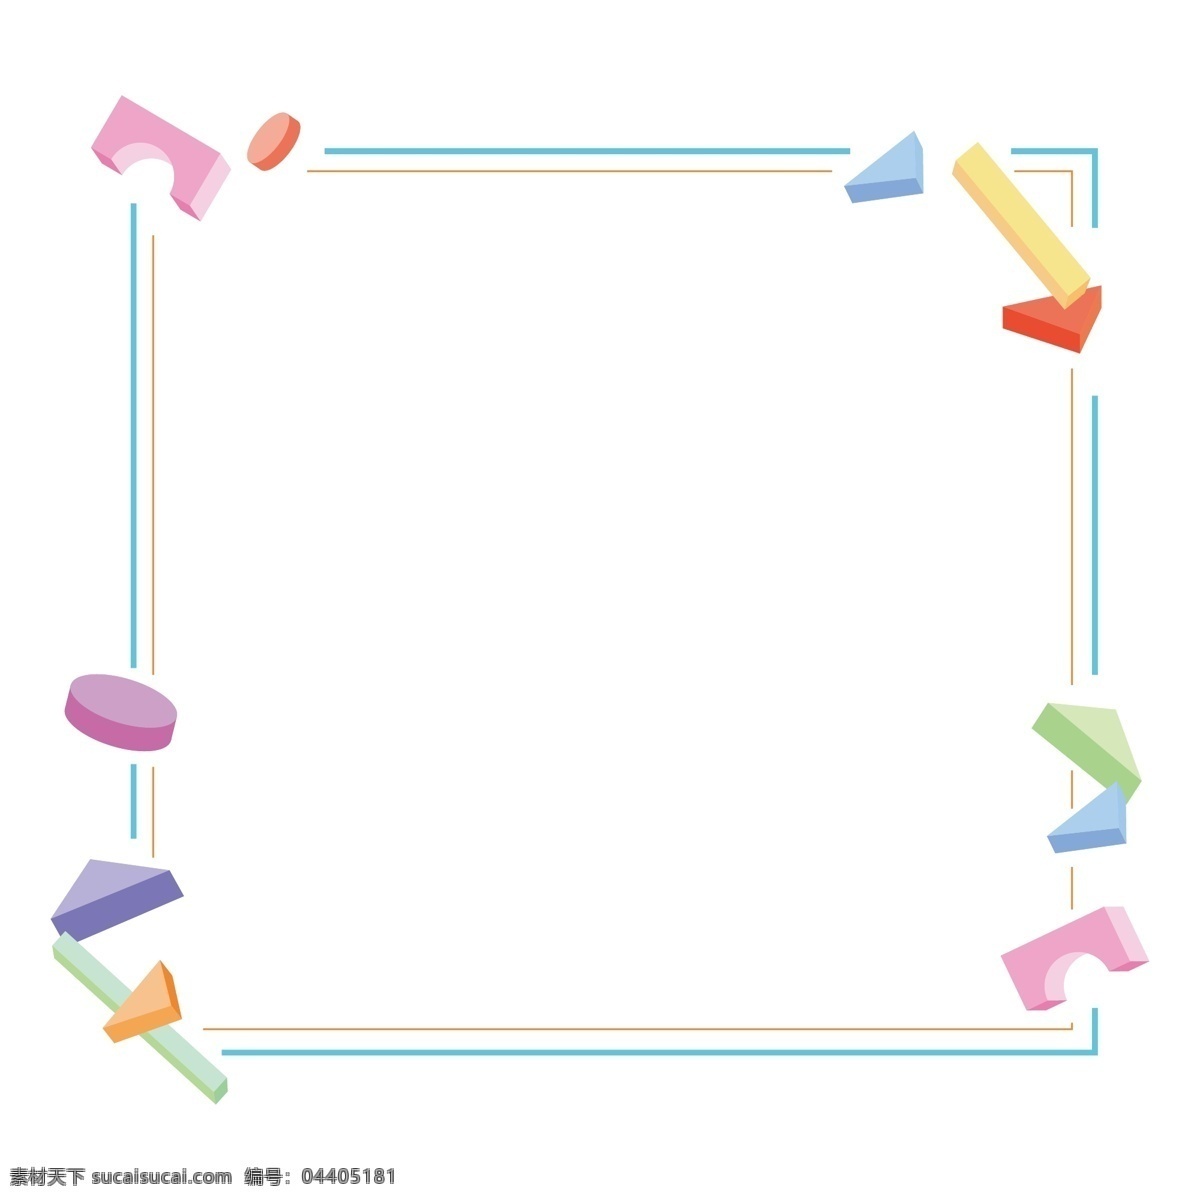 儿童节 可爱 彩色 立体 积木 矢量 边框 玩具 简约边框 立体积木 漂浮积木 简洁 糖果色 马卡龙色 可爱简约边框